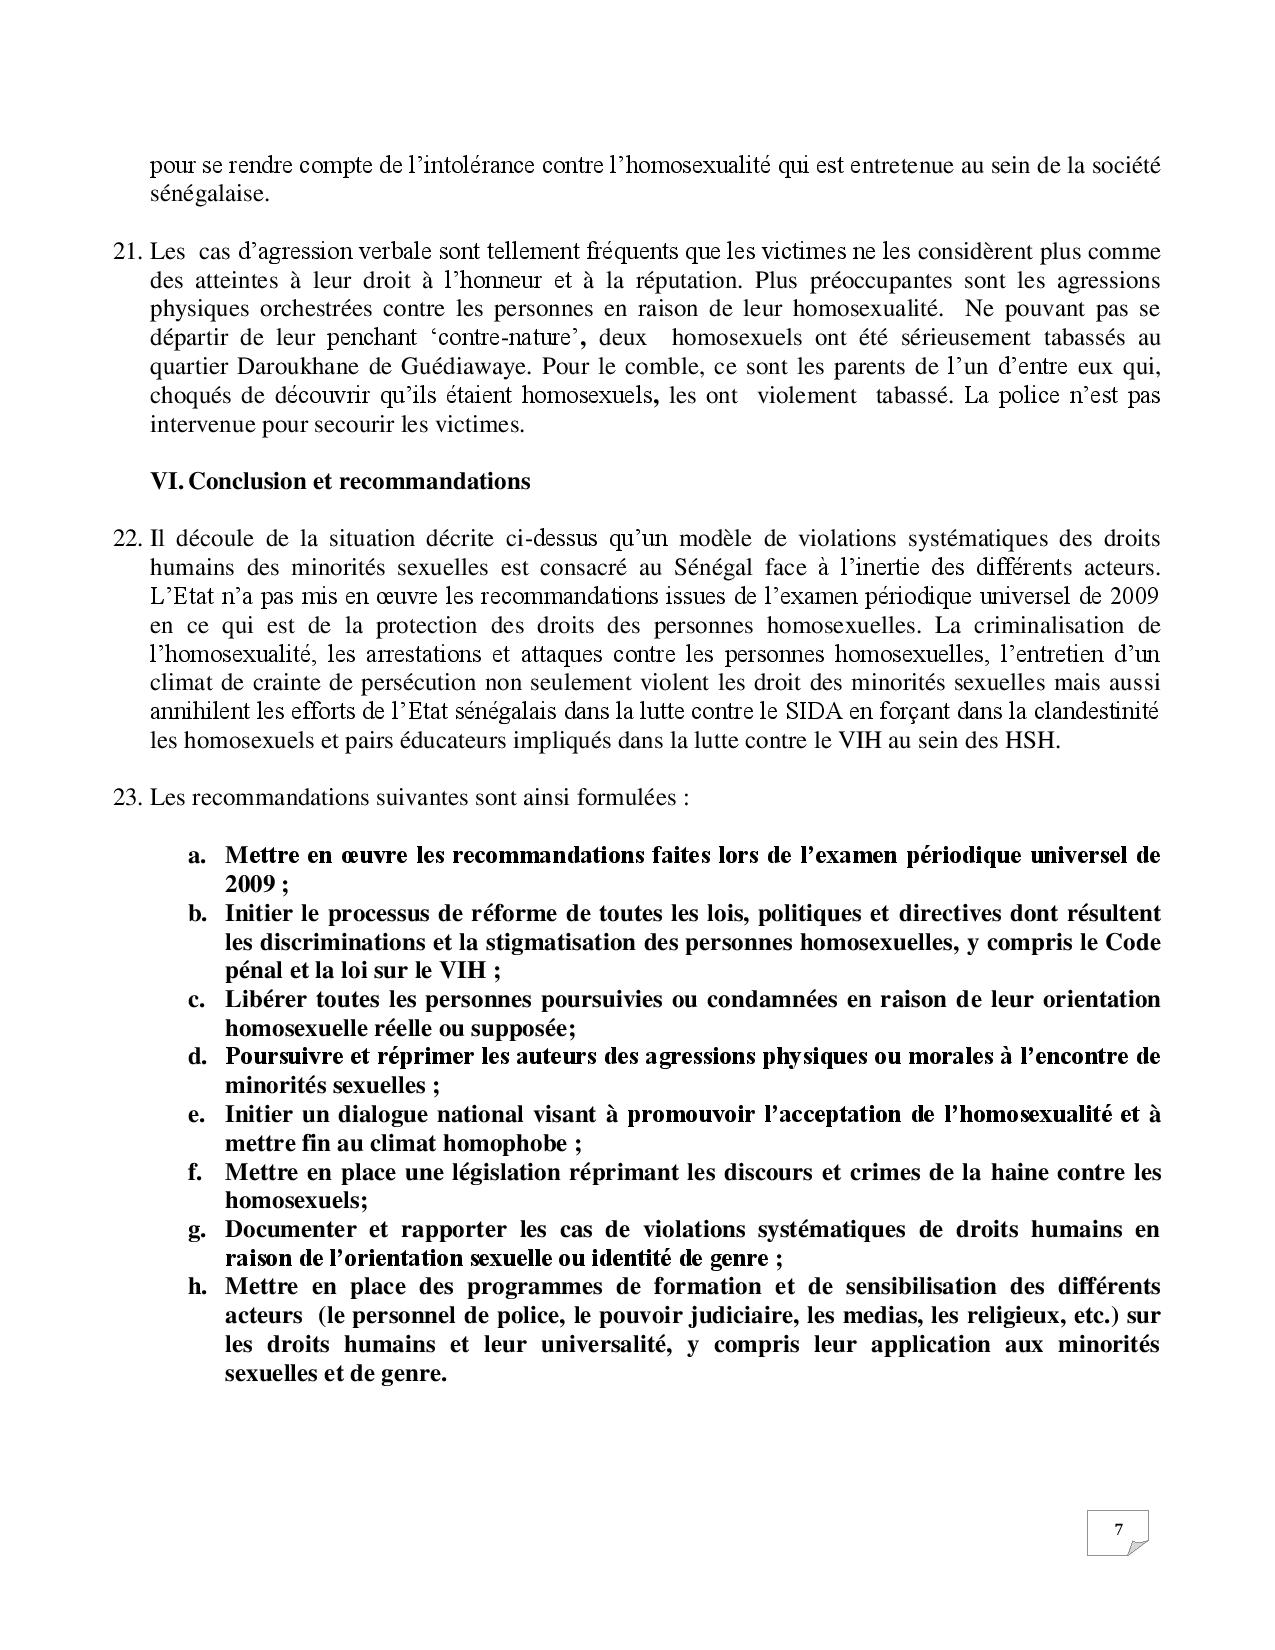 Récépissés des associations d'homosexuels: ces détails qui bétonnent les preuves brandies par Mame Matar Guèye (documents) 